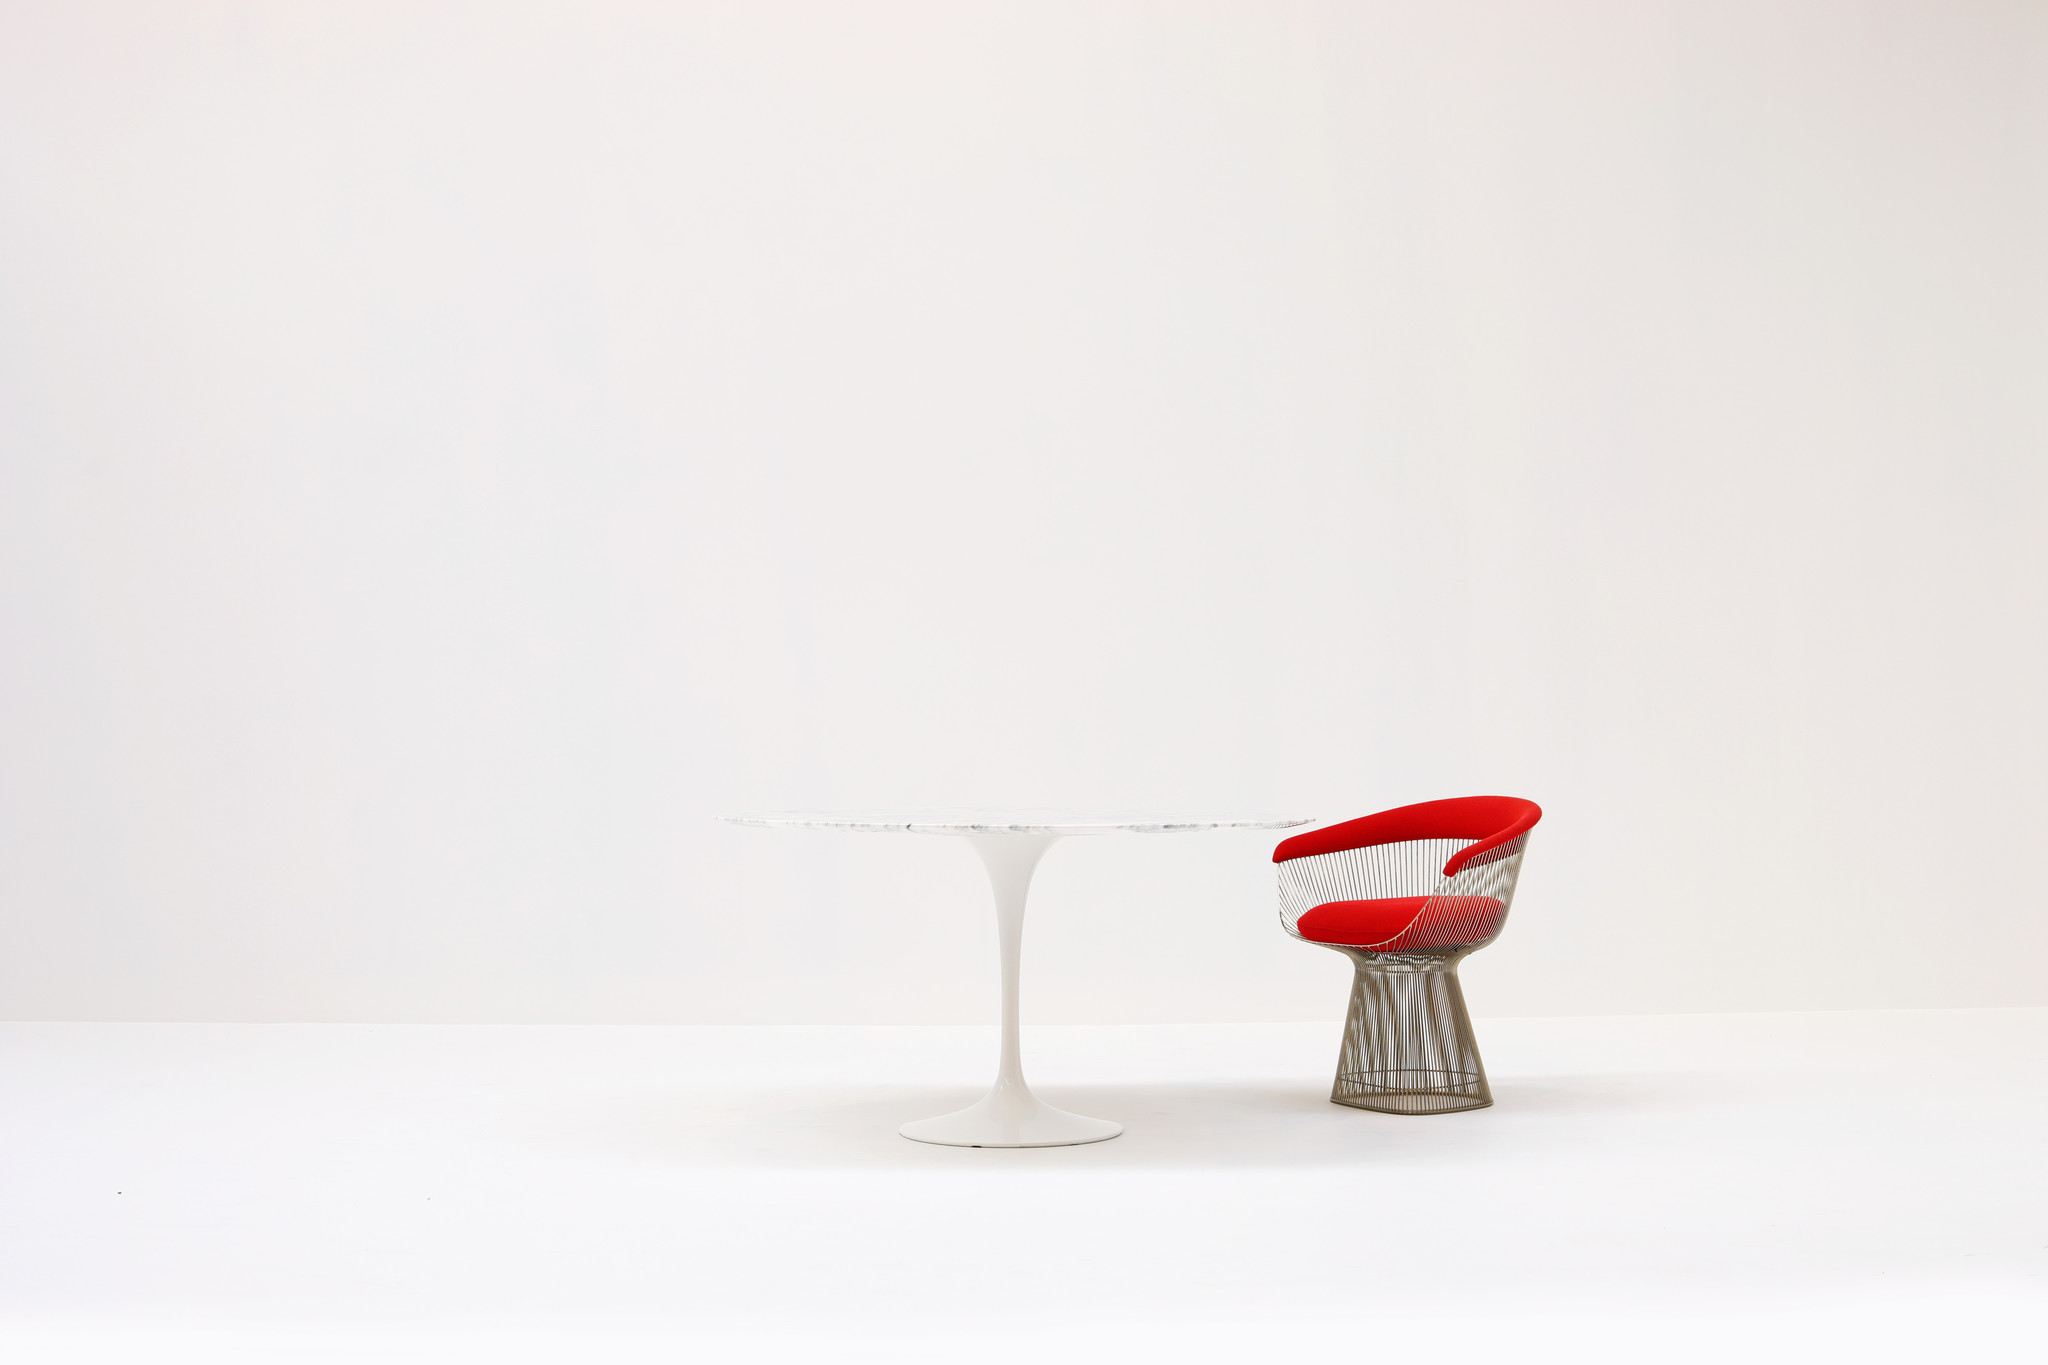 Marmeren Knoll Tulip tafel ontworpen door Eero Saarinen